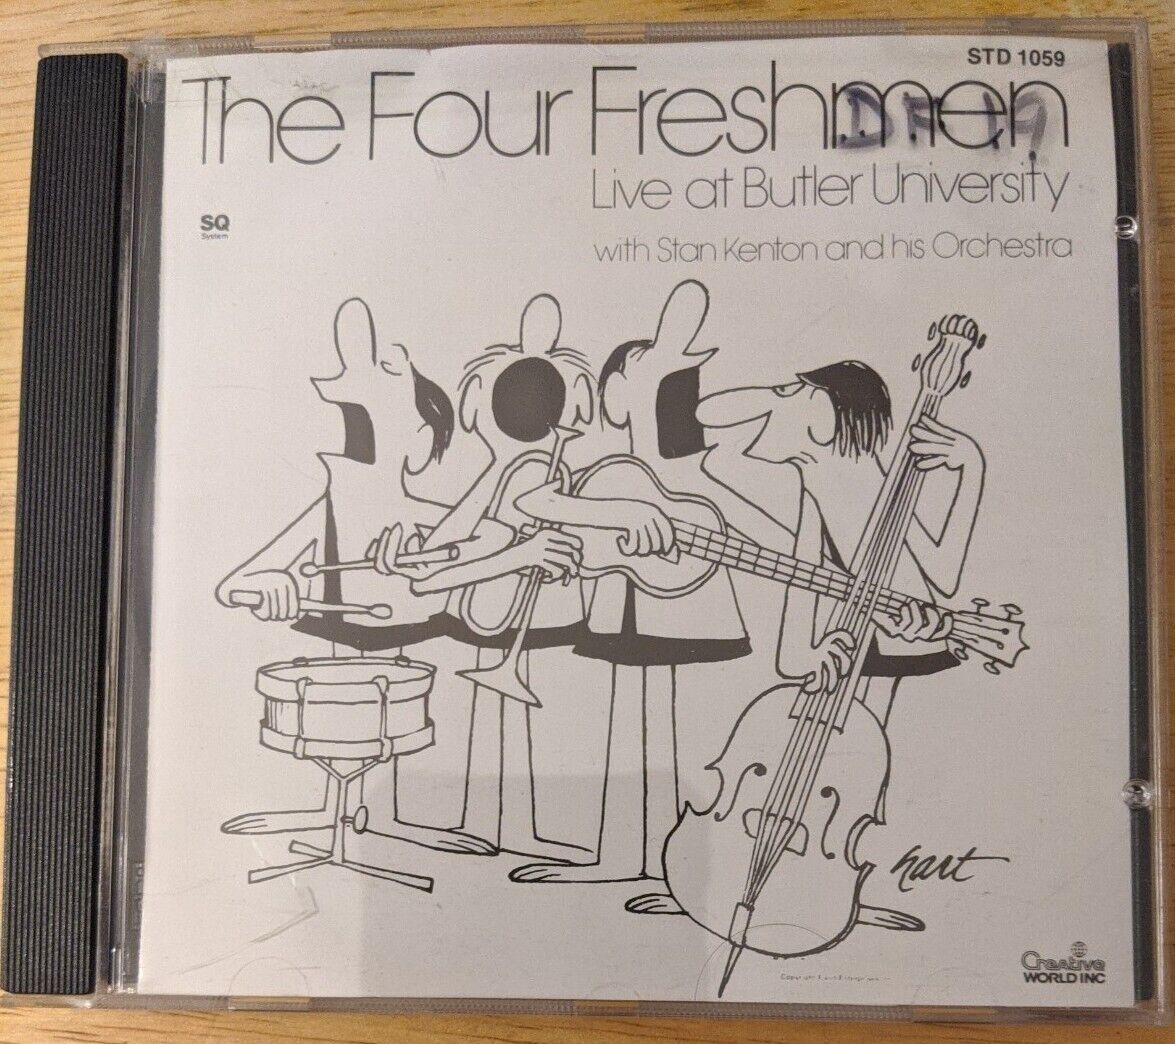 The Four Freshmen W/ Stan Kenton & Orchestra:Live at Butler University CD  #629